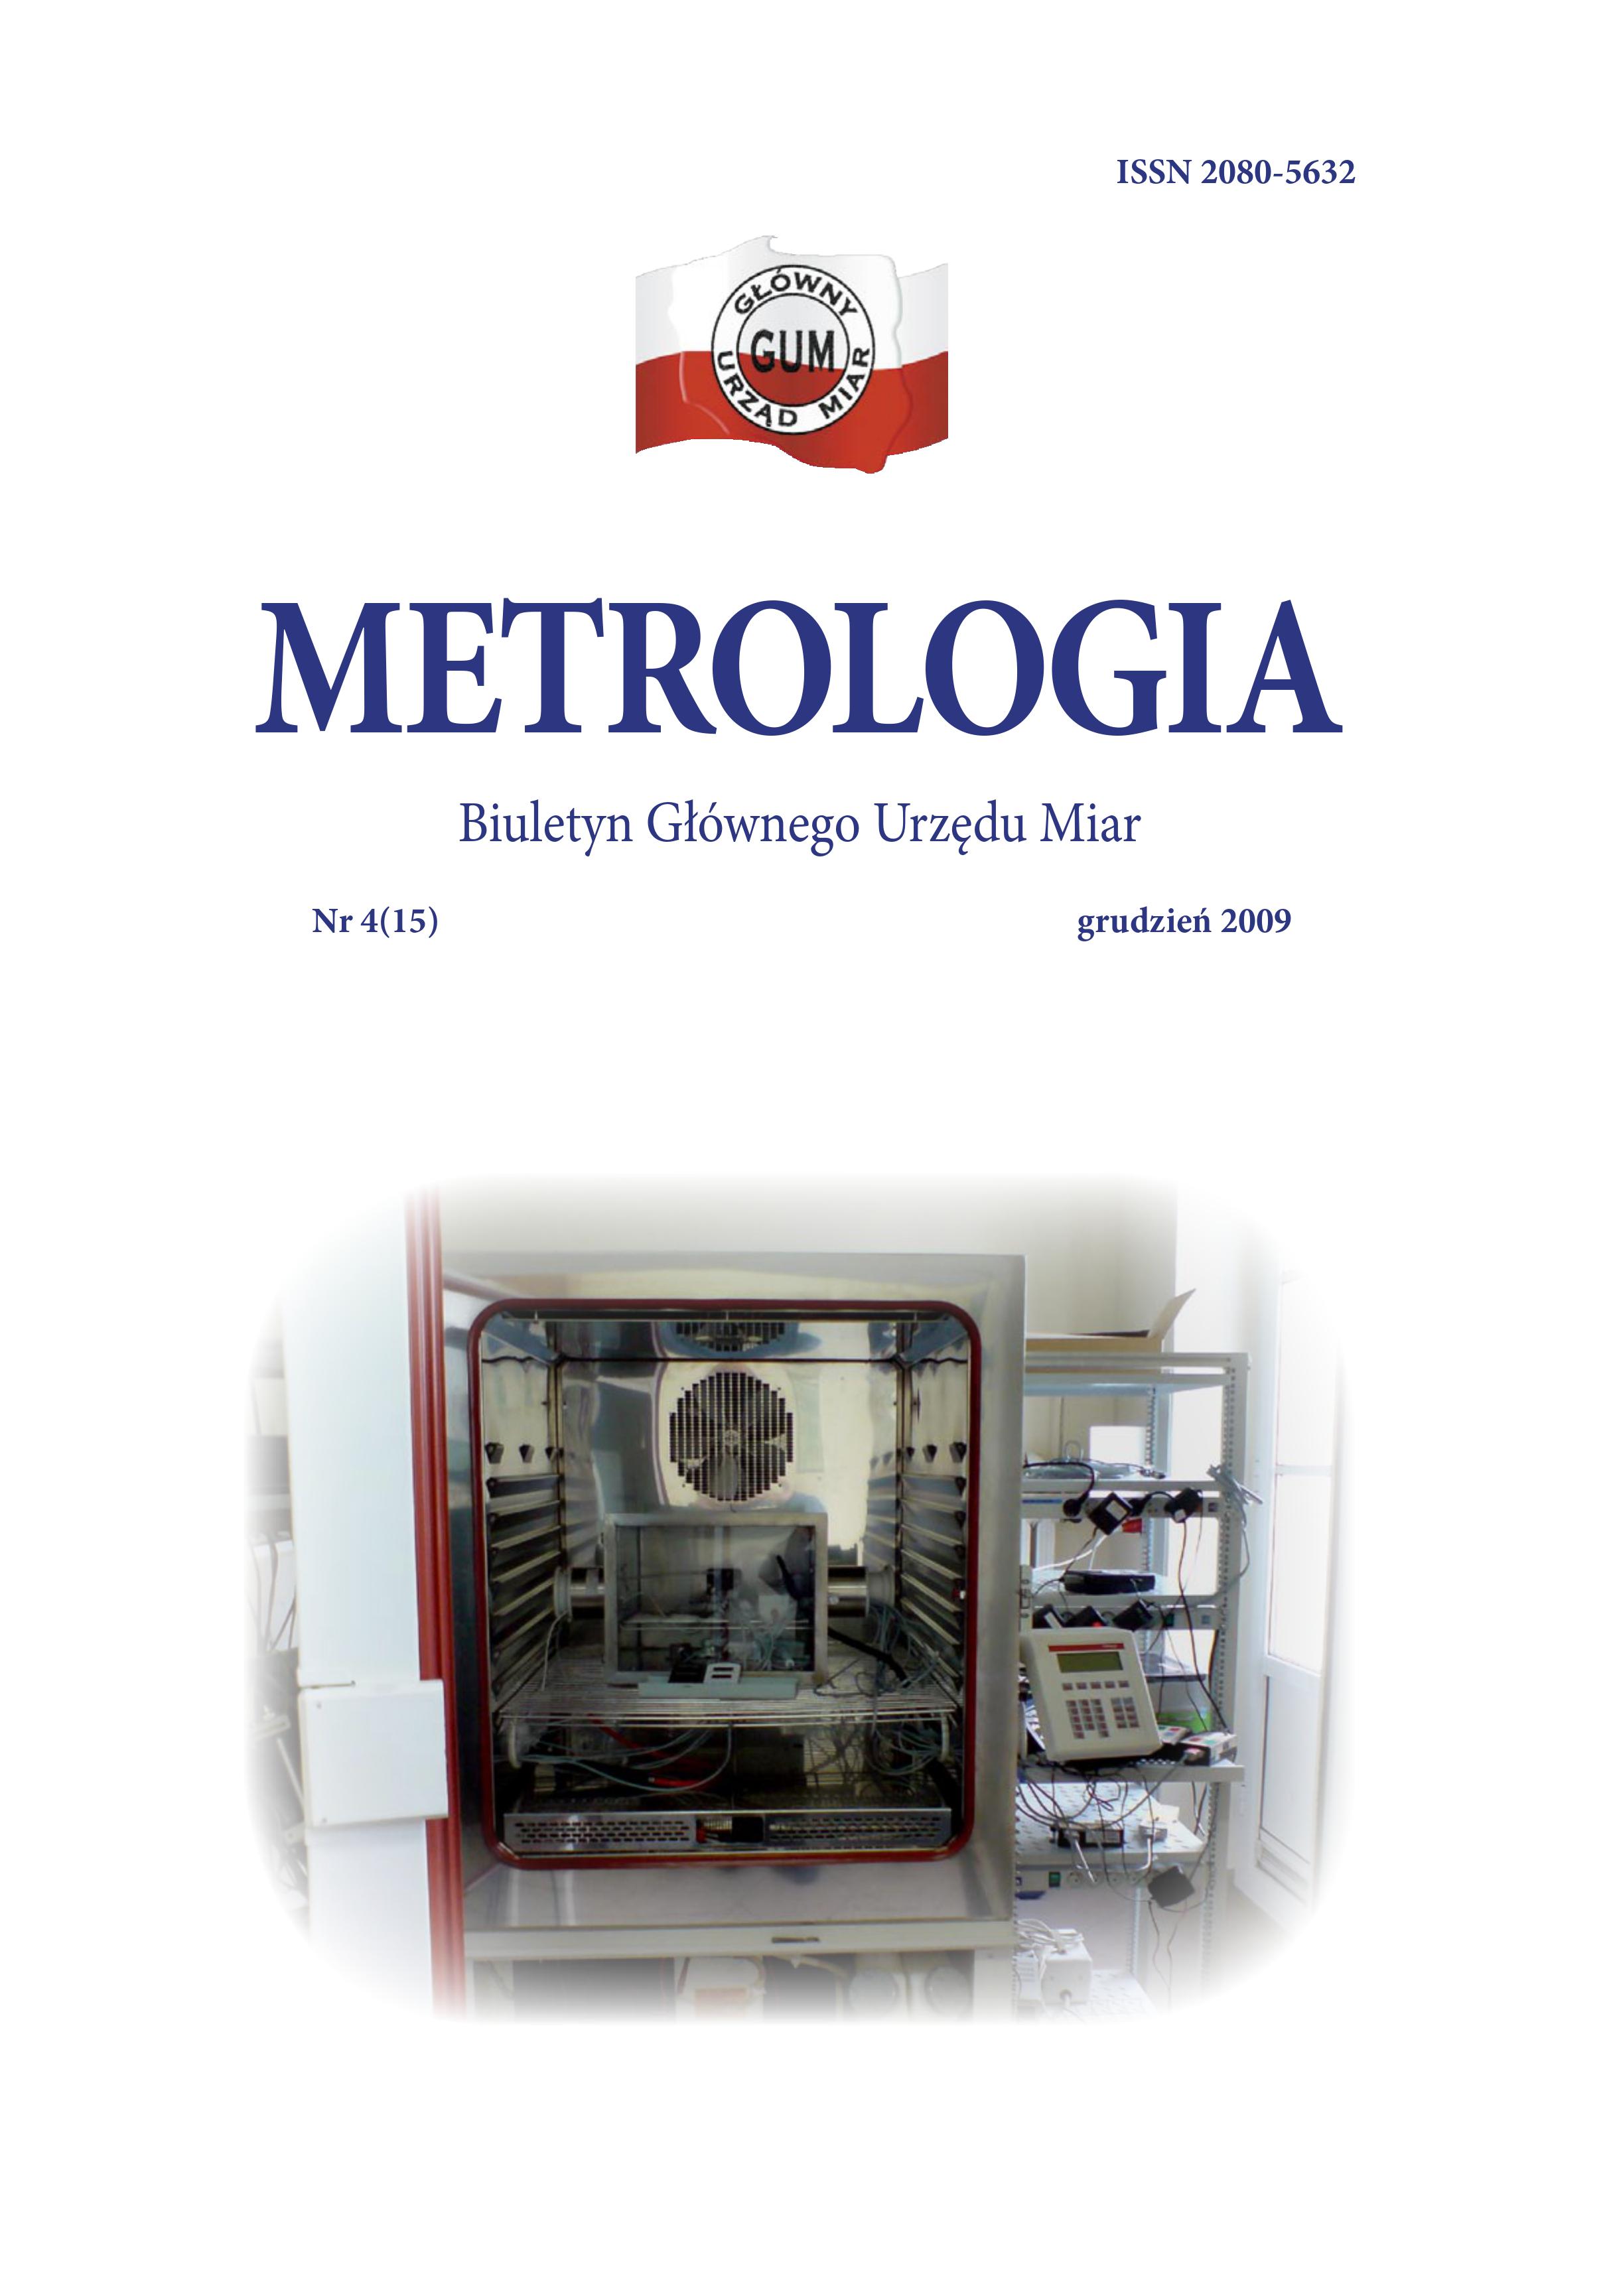 Okładka nr 4 z 2009 r. Biuletynu GUM Metrologia. Na okładce u góry biało-czerwone logo GUM, niżej tytuł Metrologia, a pod nim zdjęcie komory w laboratorium fizykochemii.